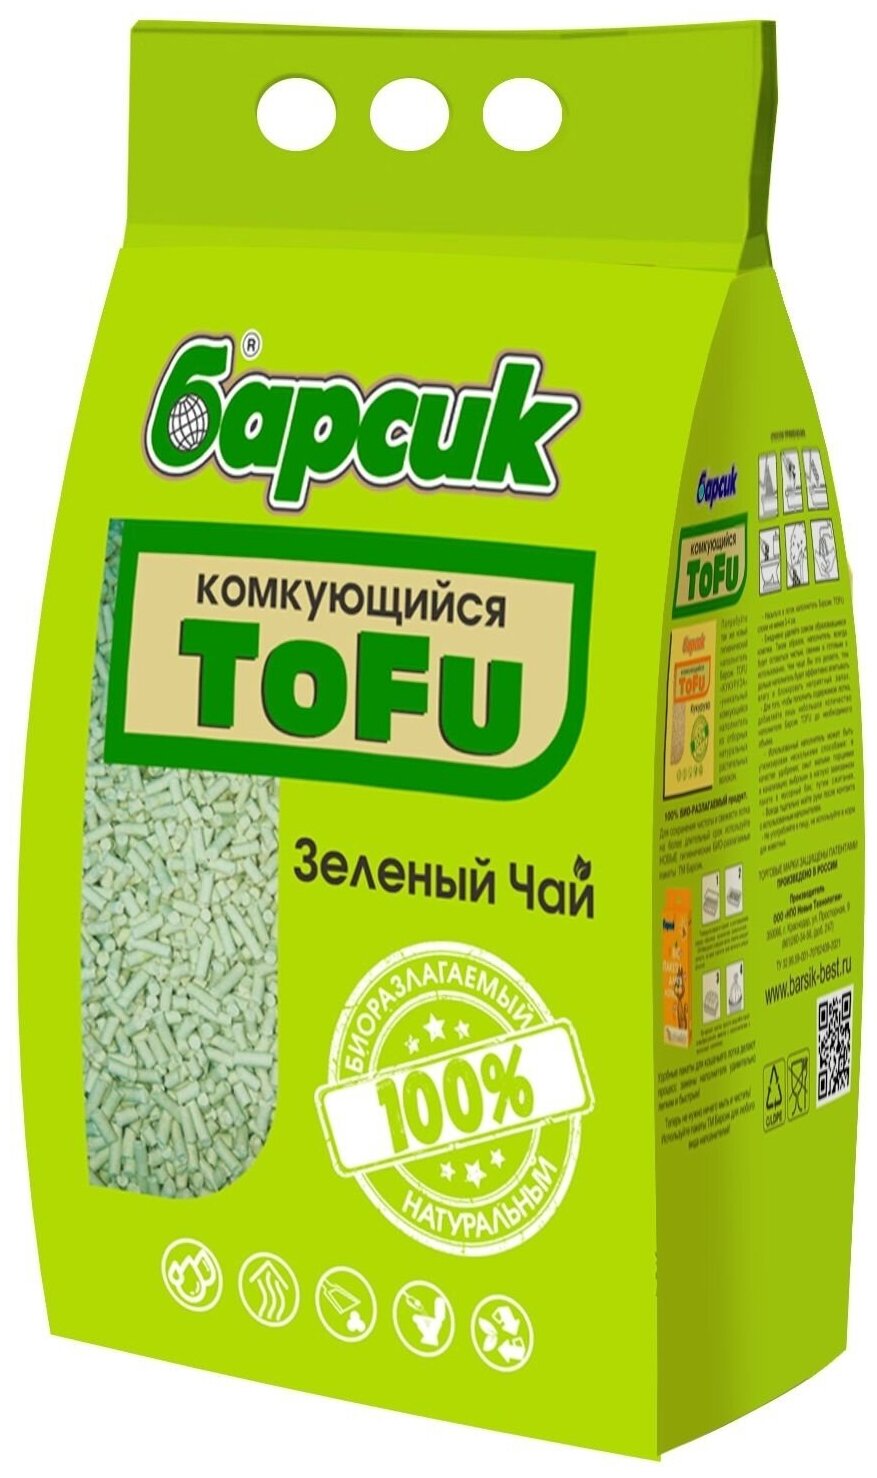 Комкующийся наполнитель Барсик Tofu Зелёный Чай, 15л, 1 шт.